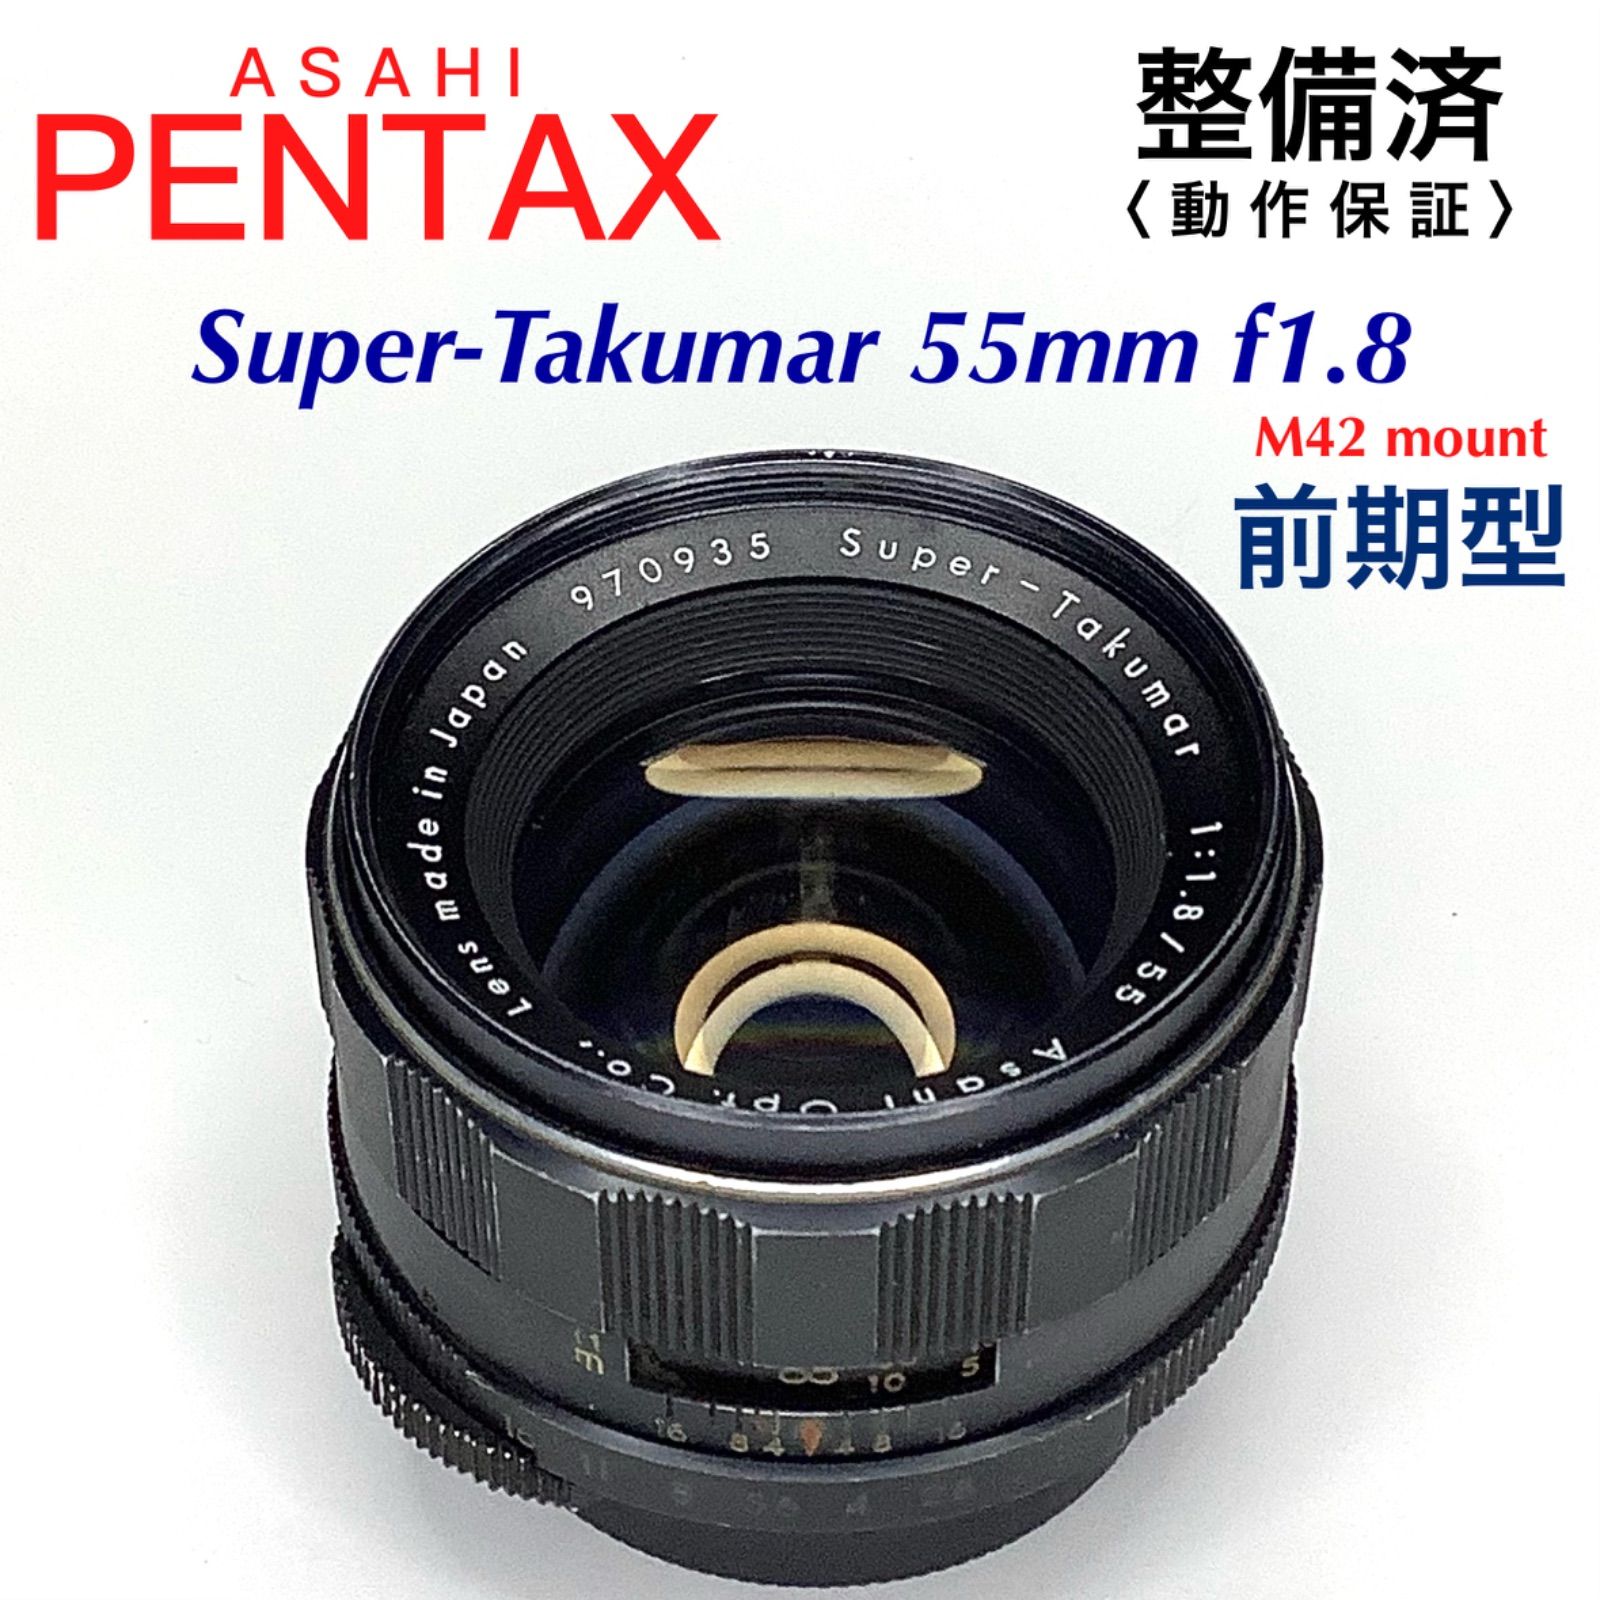 訳あり商品 アサヒペンタックス Super-Takumar 55mm f1.8 前期型 5976円 カメラ www.acojud.org